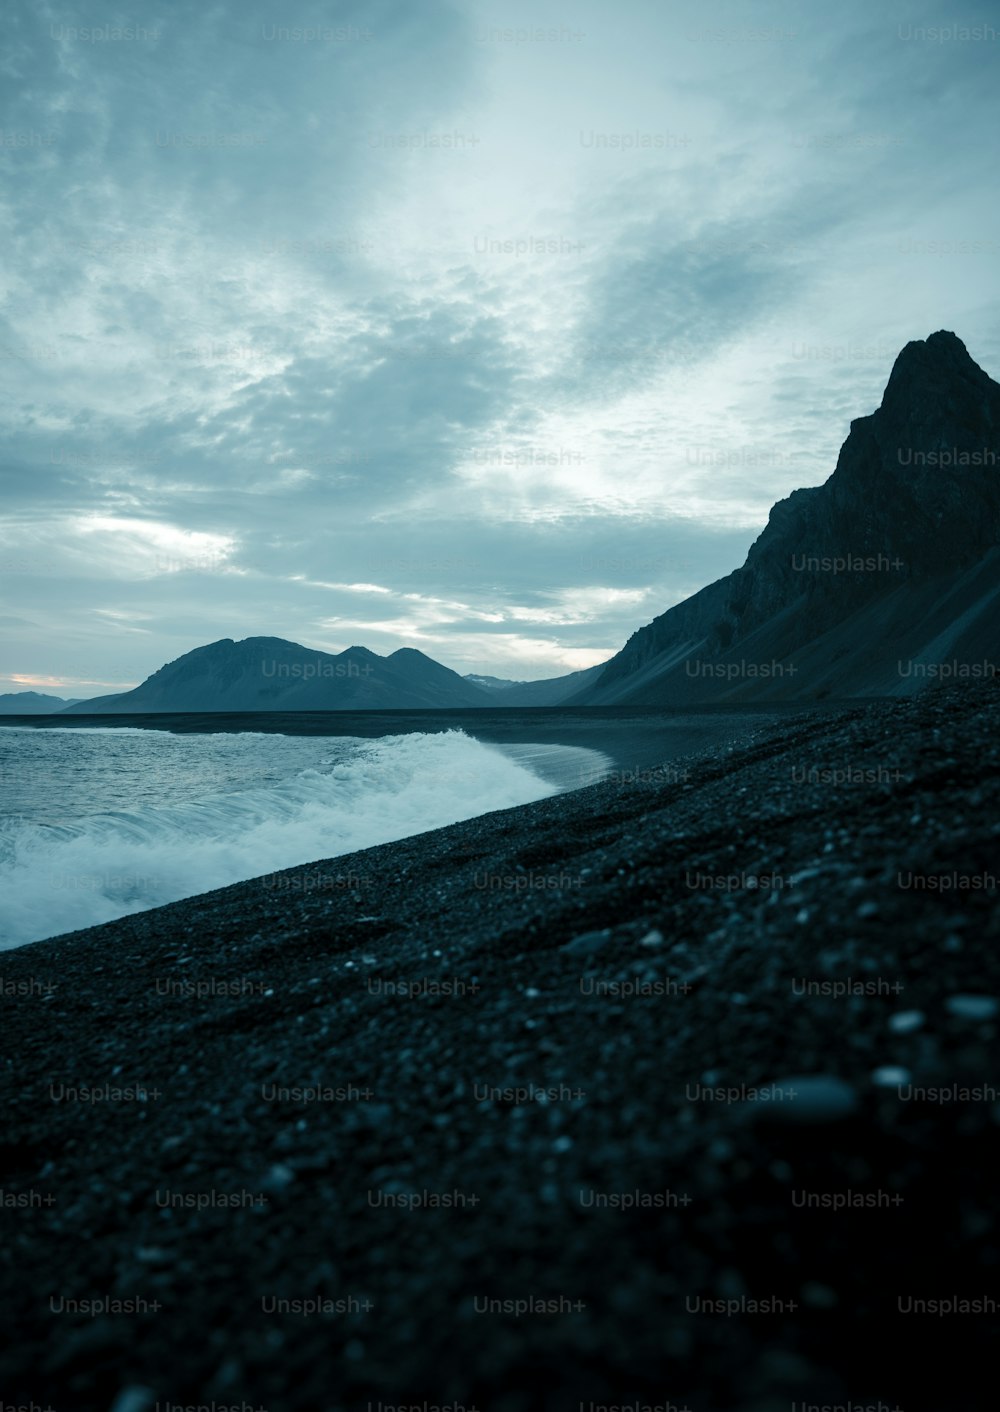 Une plage noire avec une montagne en arrière-plan